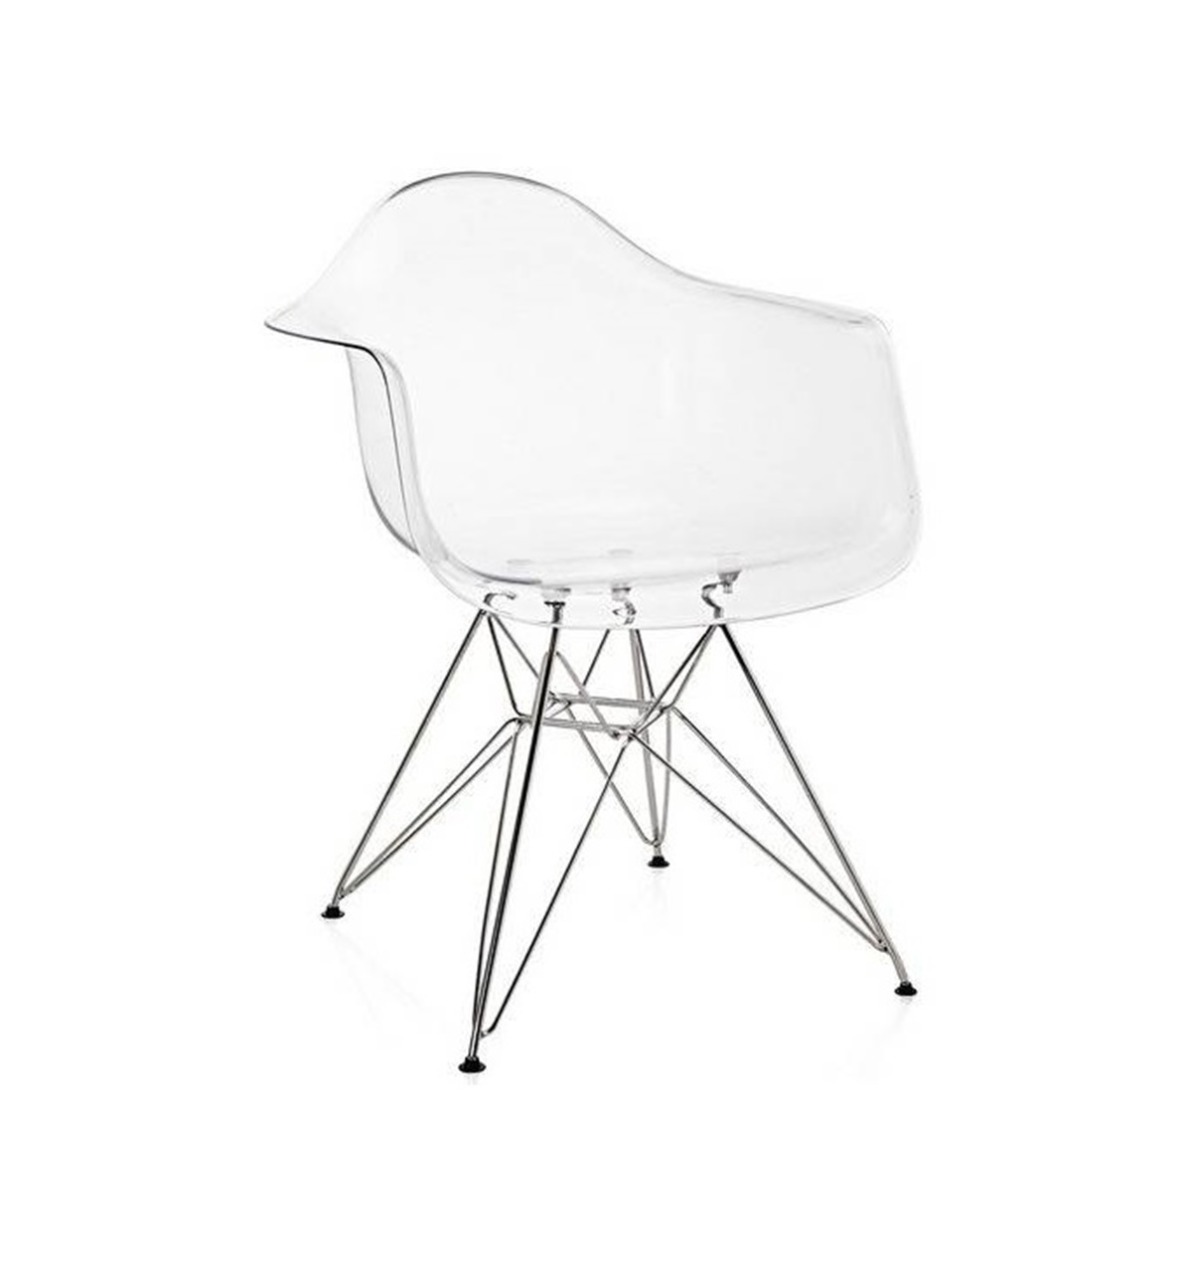 Cadeira Eames c/braço metal transparente